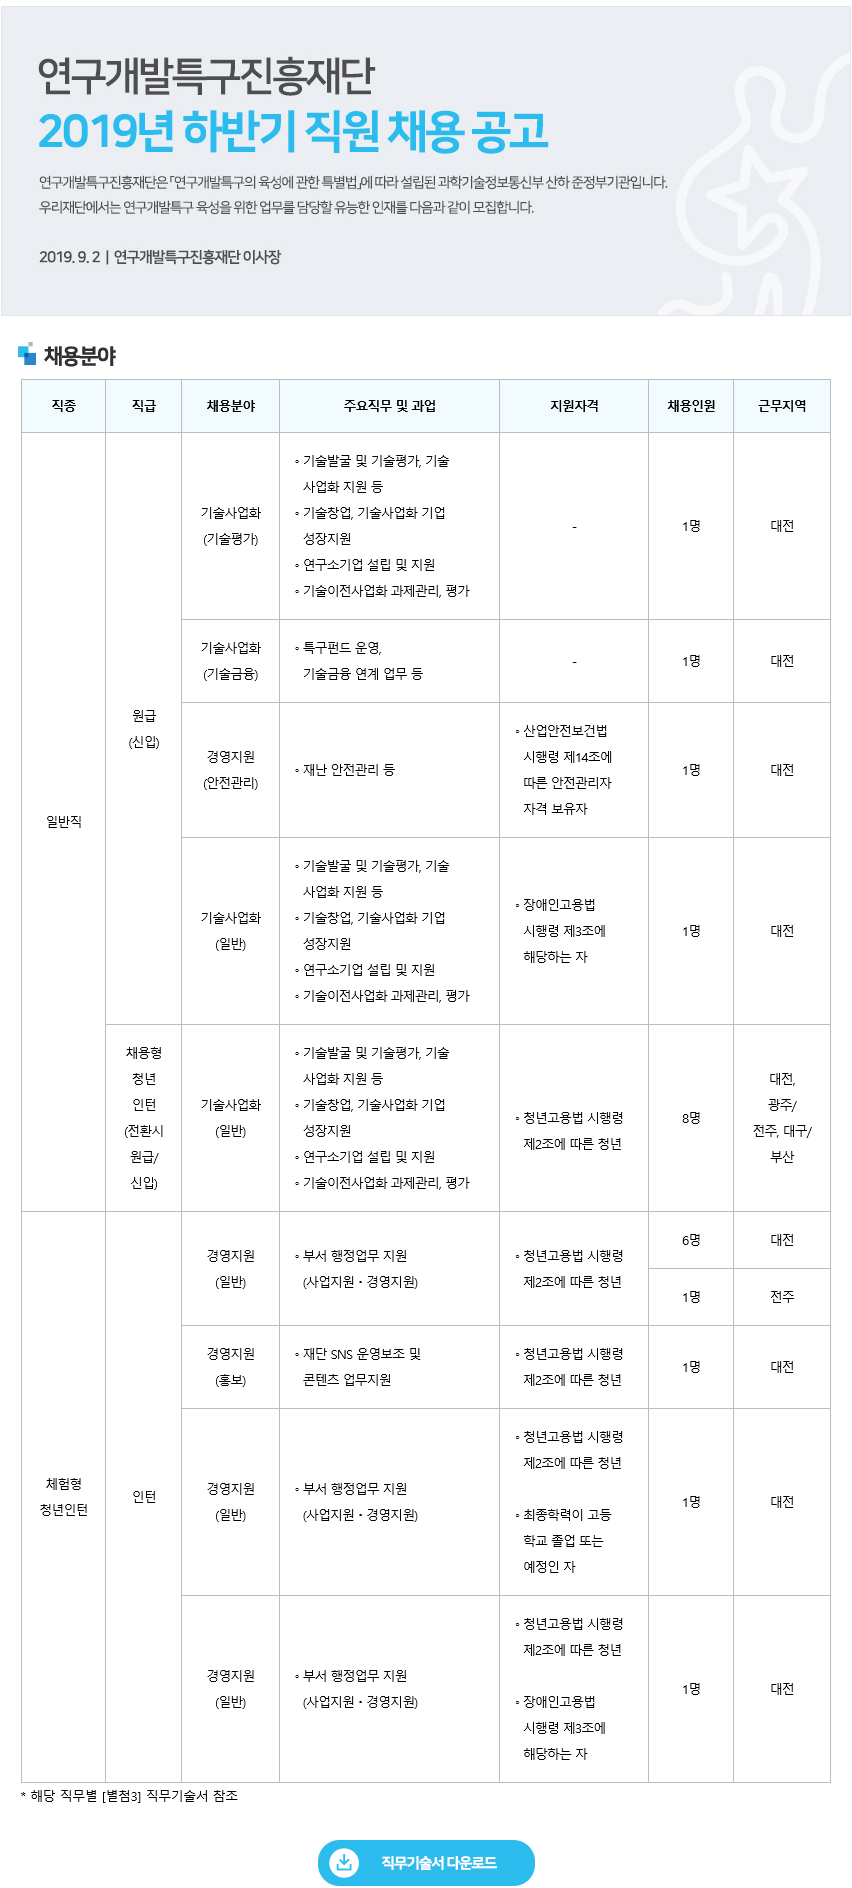 연구개발특구진흥재단 2019년 하반기 직원 채용 공고문.hwp 참고